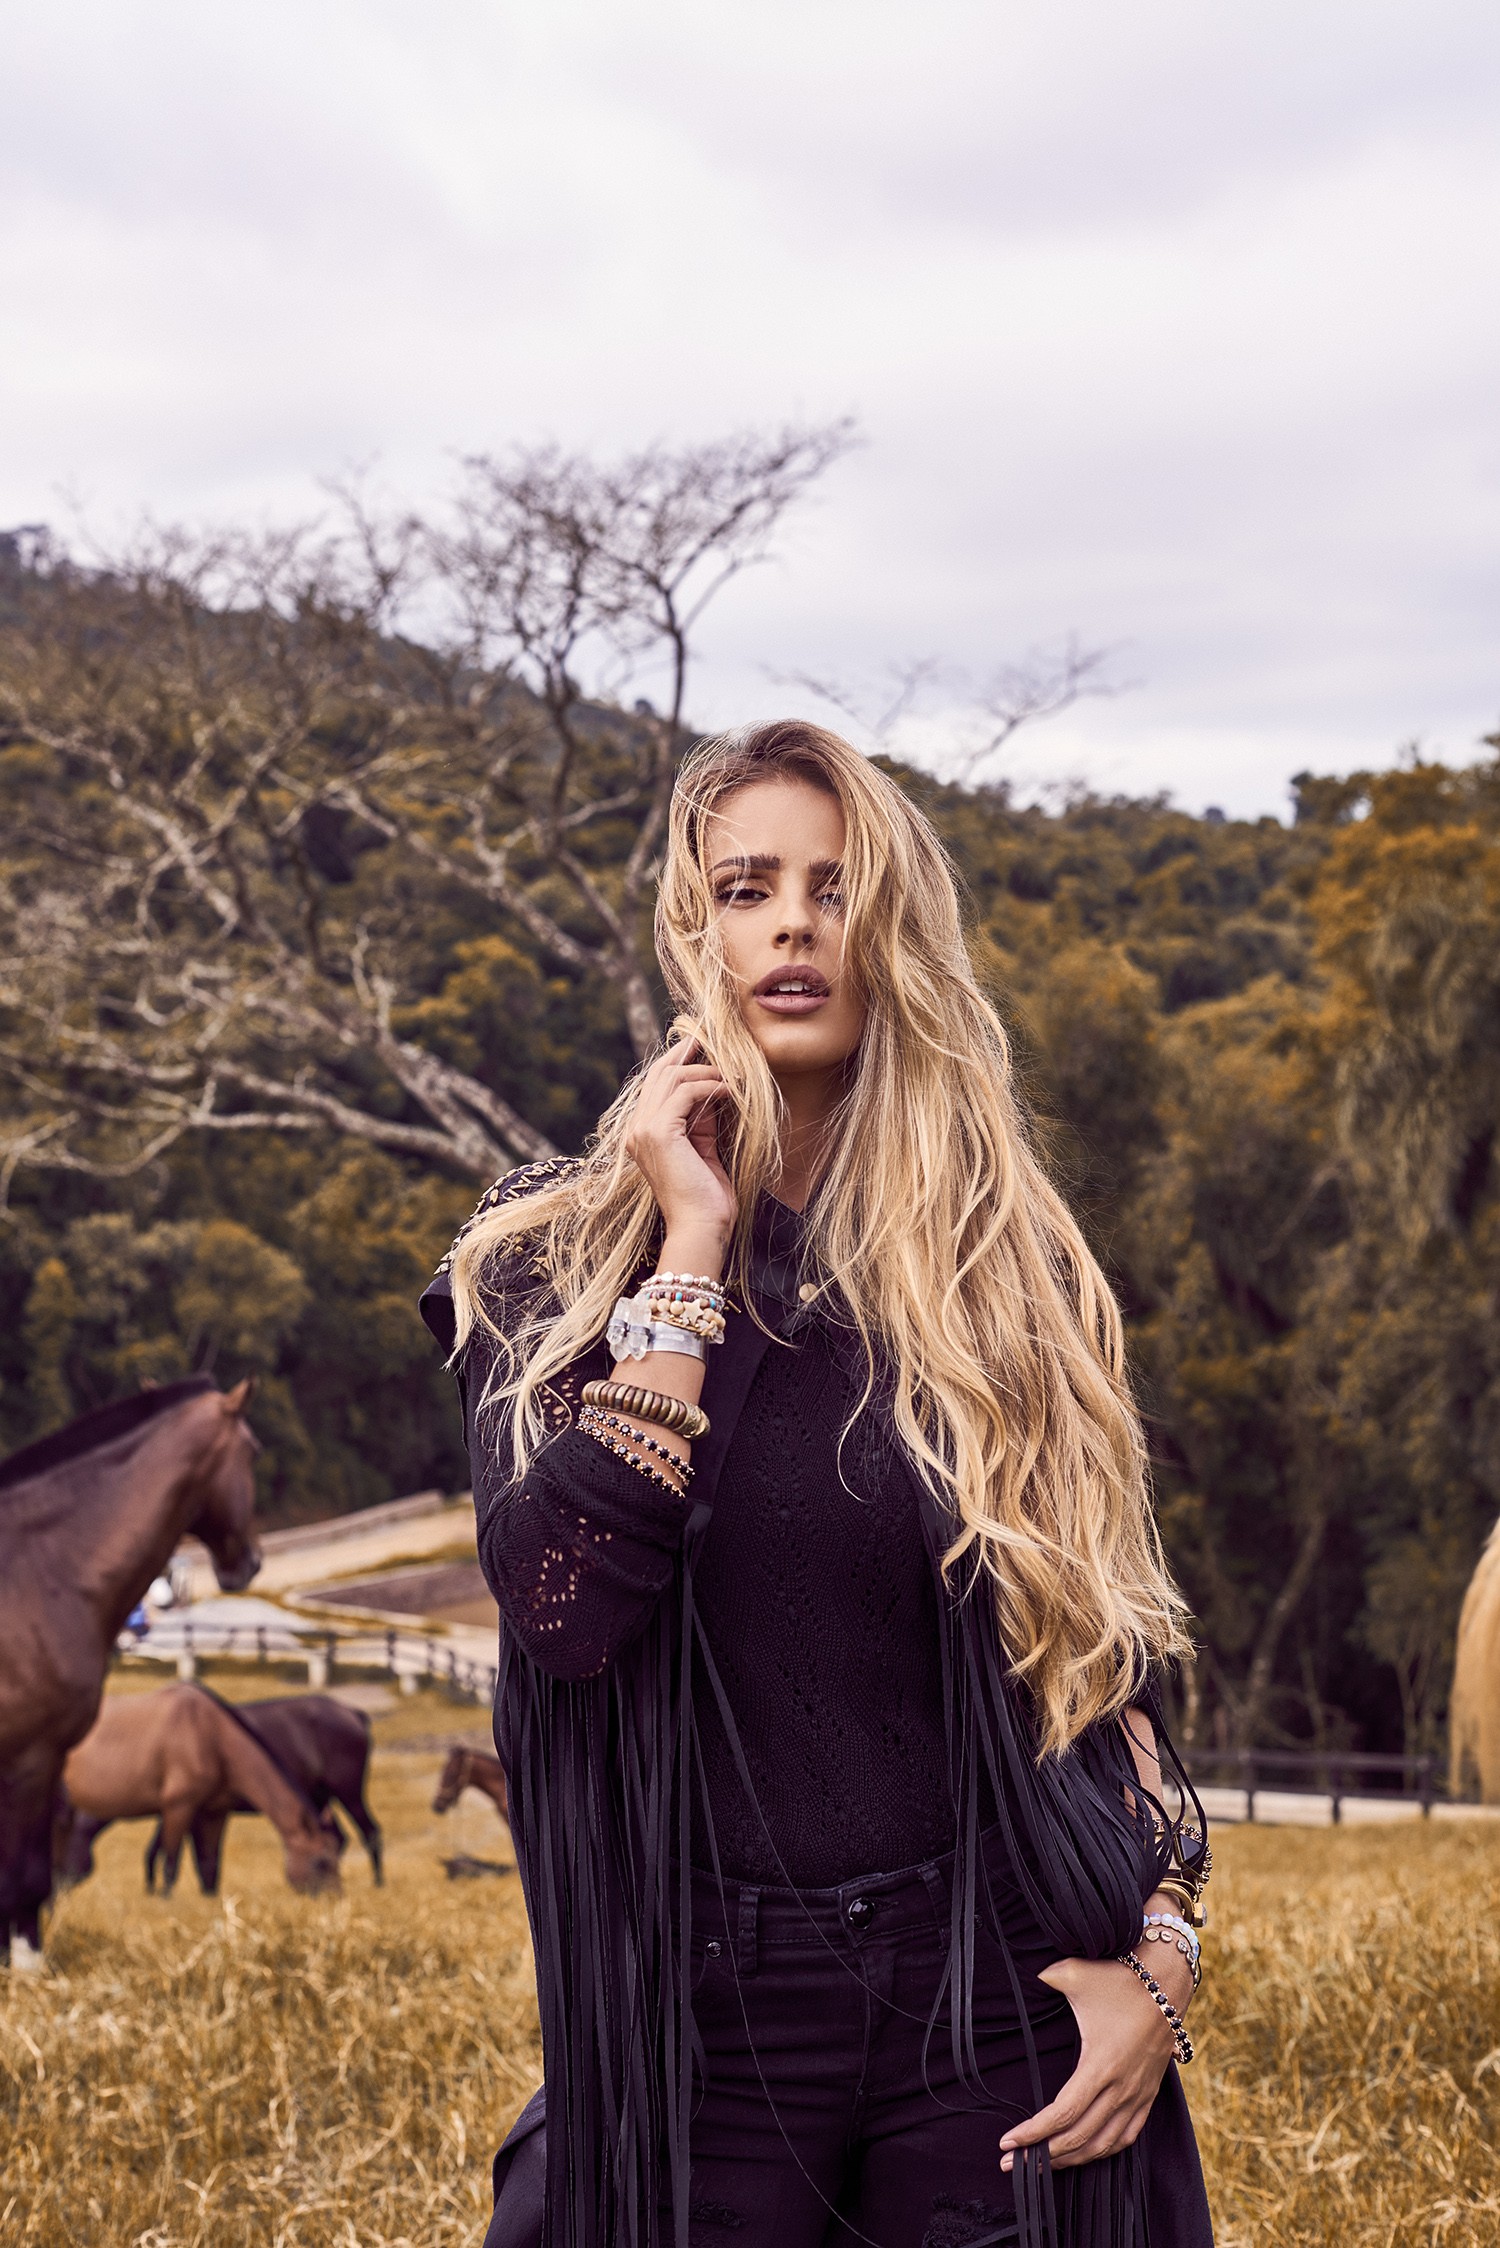 Yasmin Brunet na campanha da Equus (Foto: Divulgação)